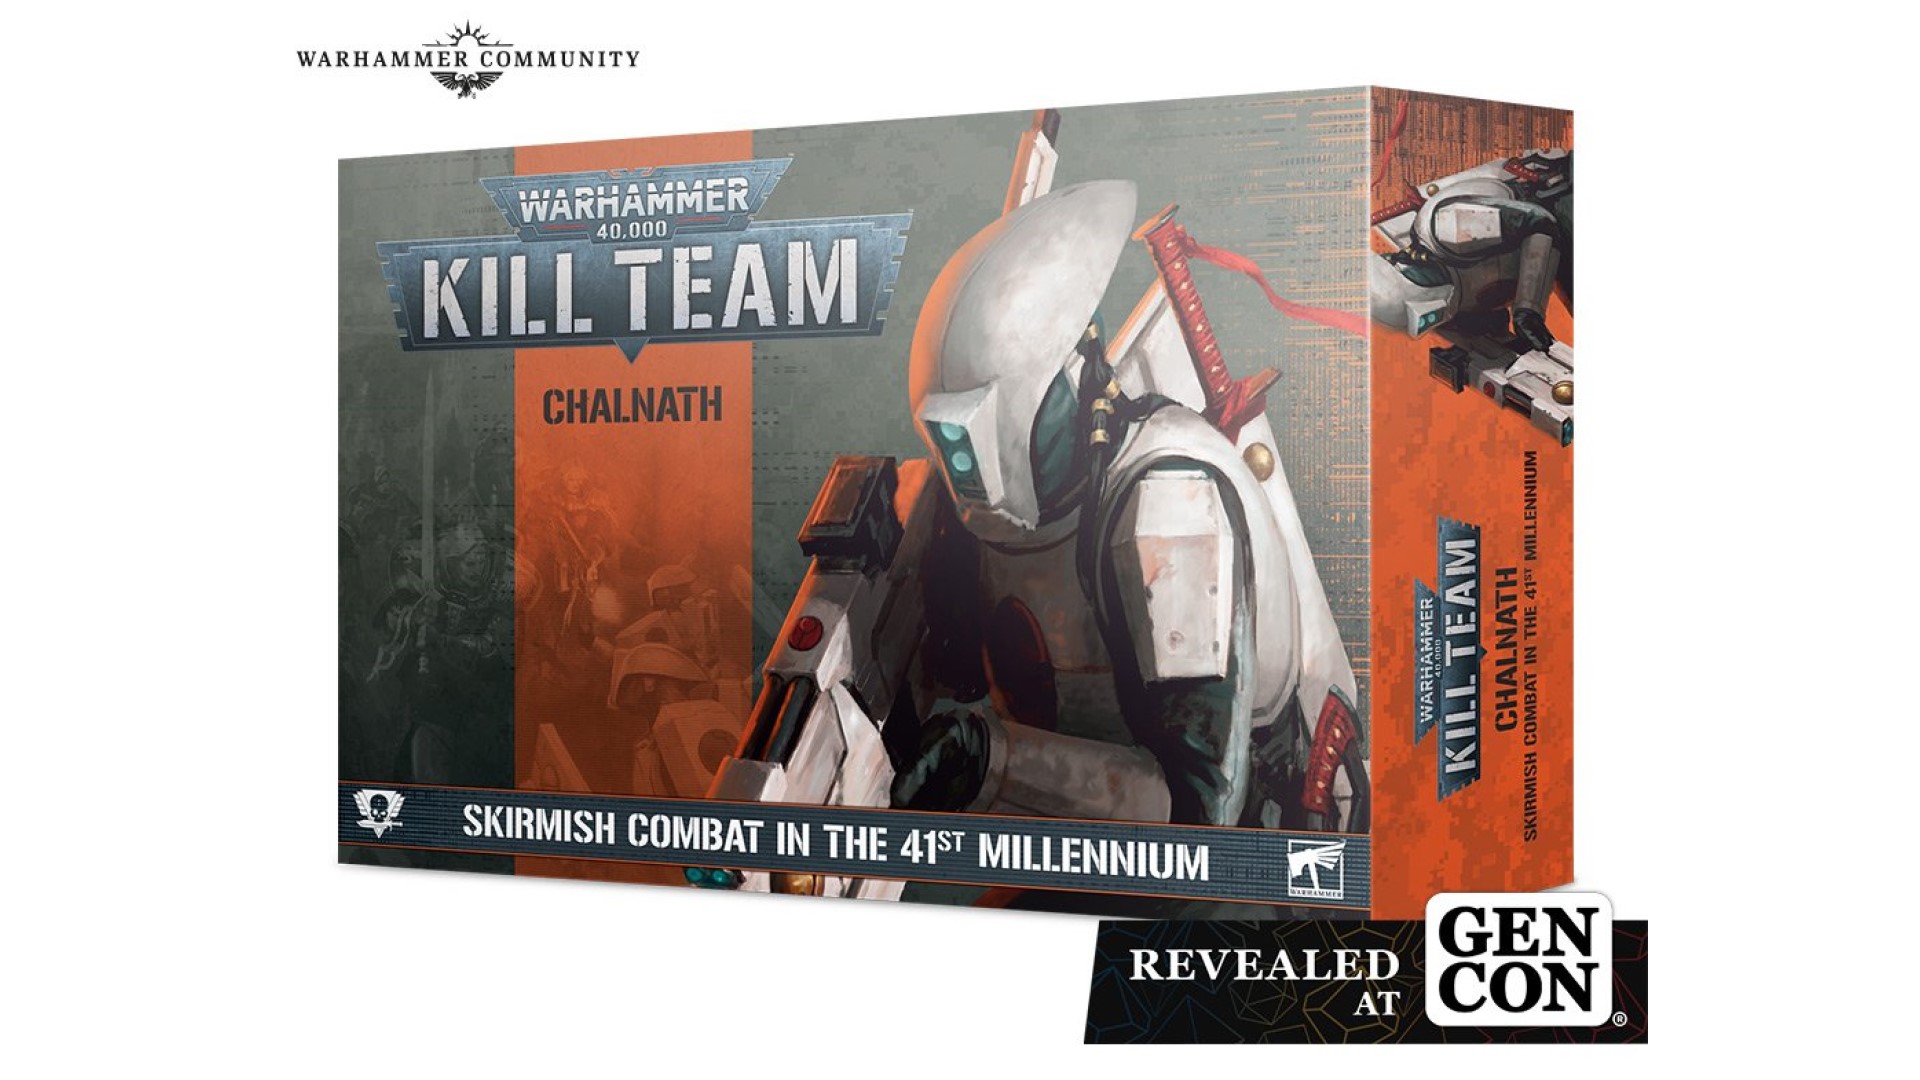 Kill Team Chalnath 96 page Book War Manual